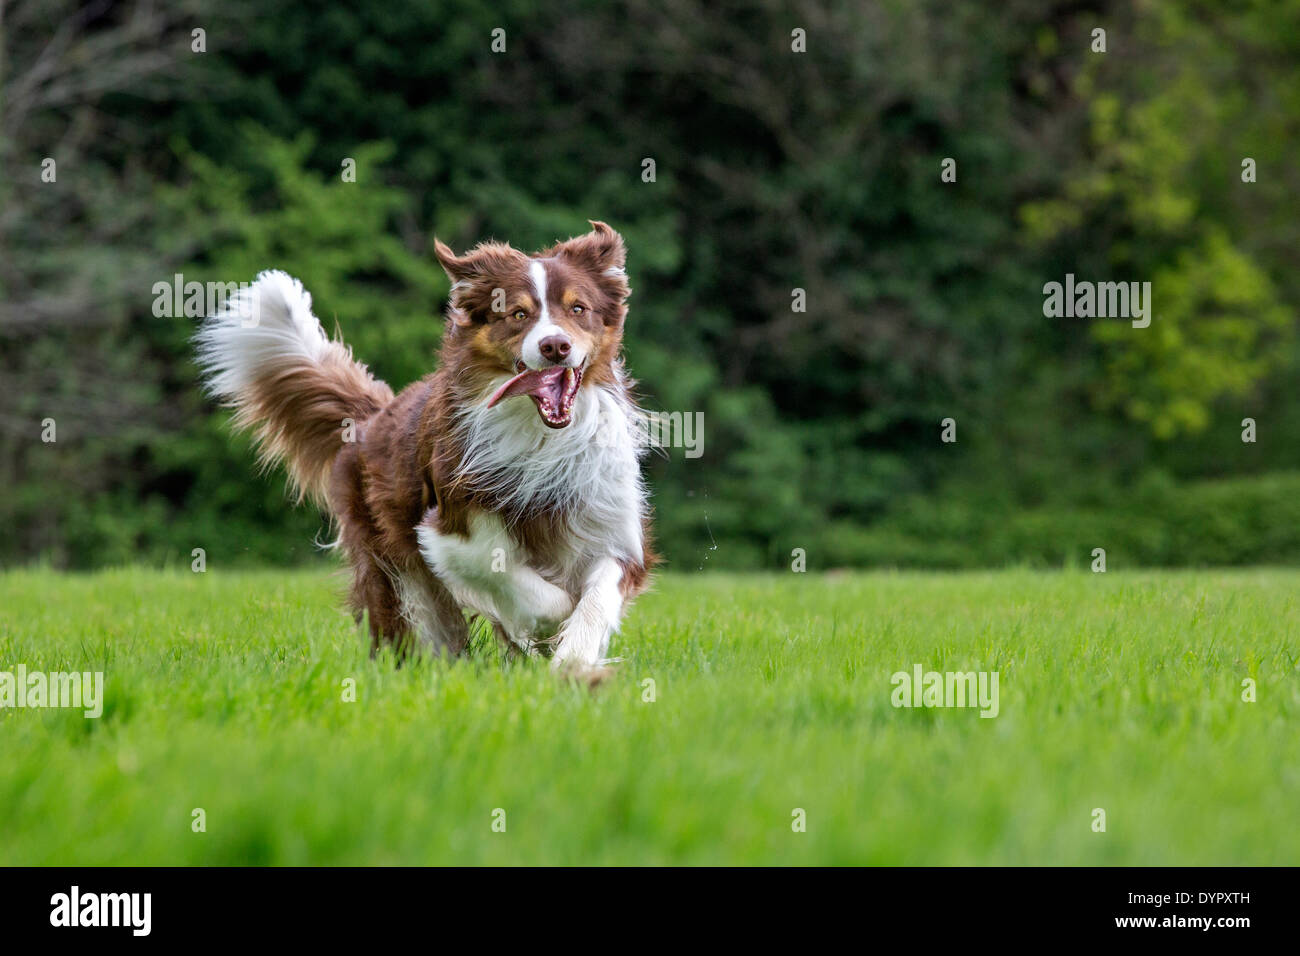 Feliz Border Collie (Canis lupus familiaris) perro corriendo en el jardín Foto de stock